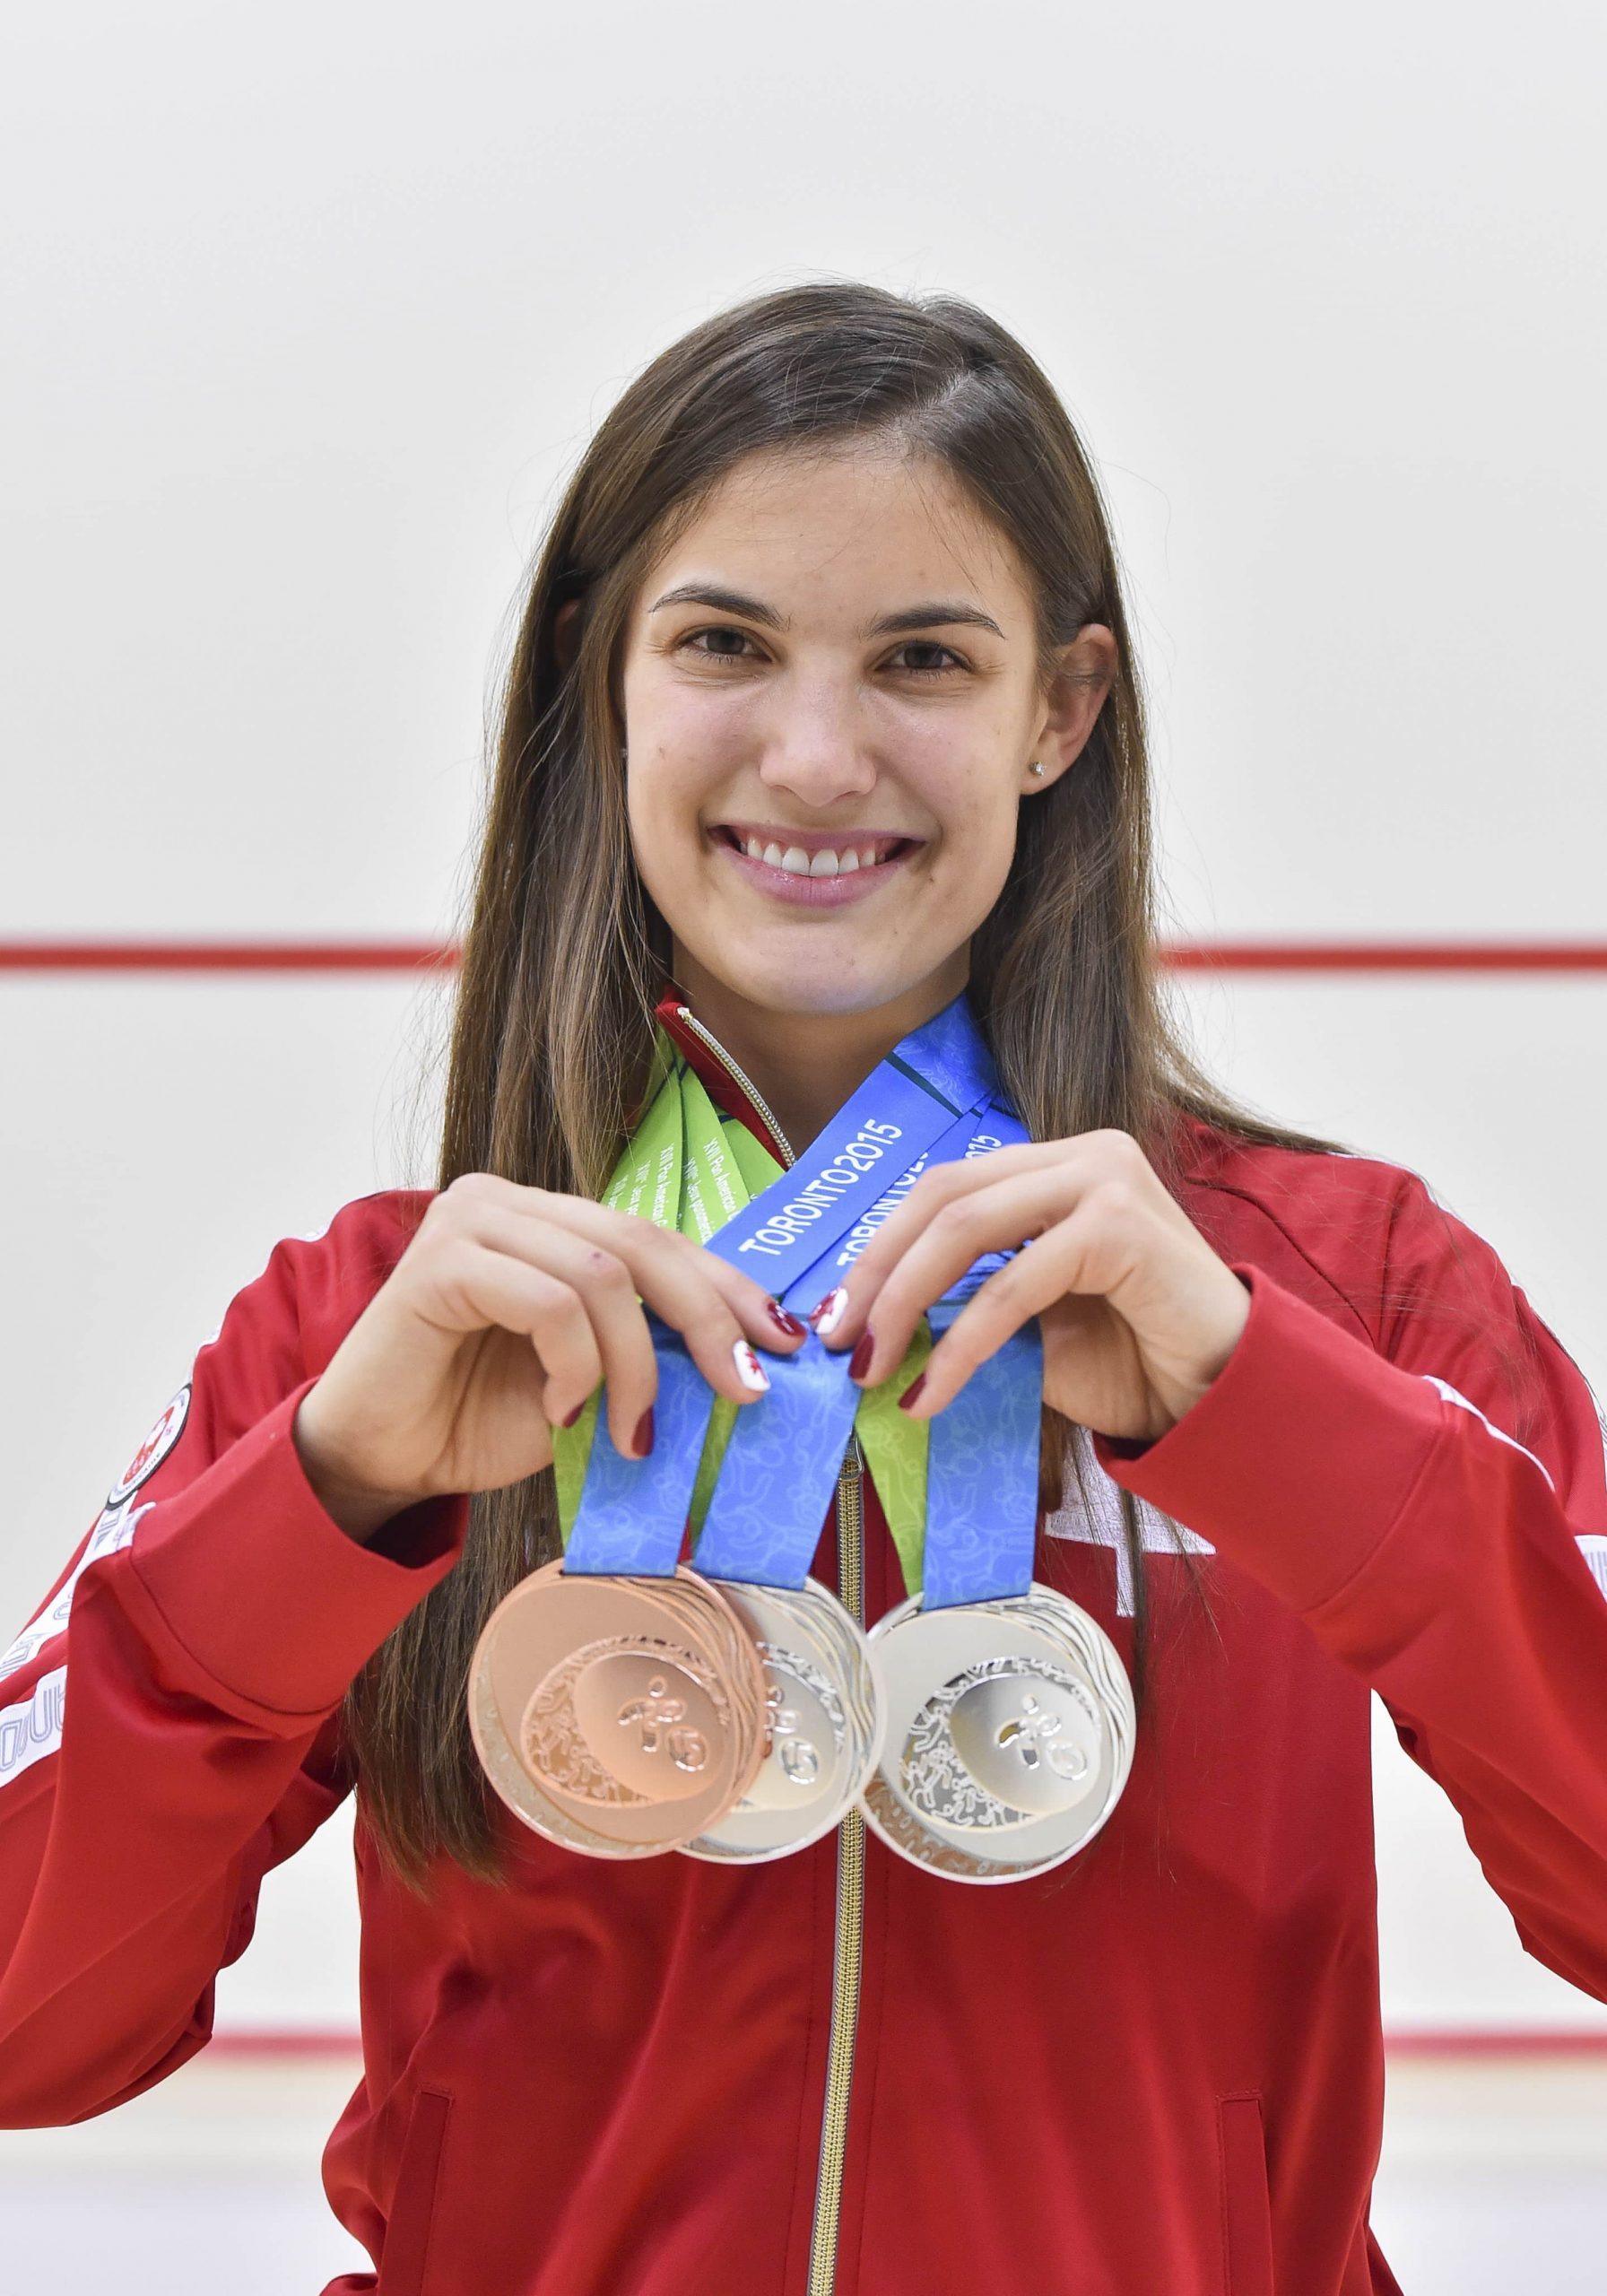 Samantha Cornett with her winning medals